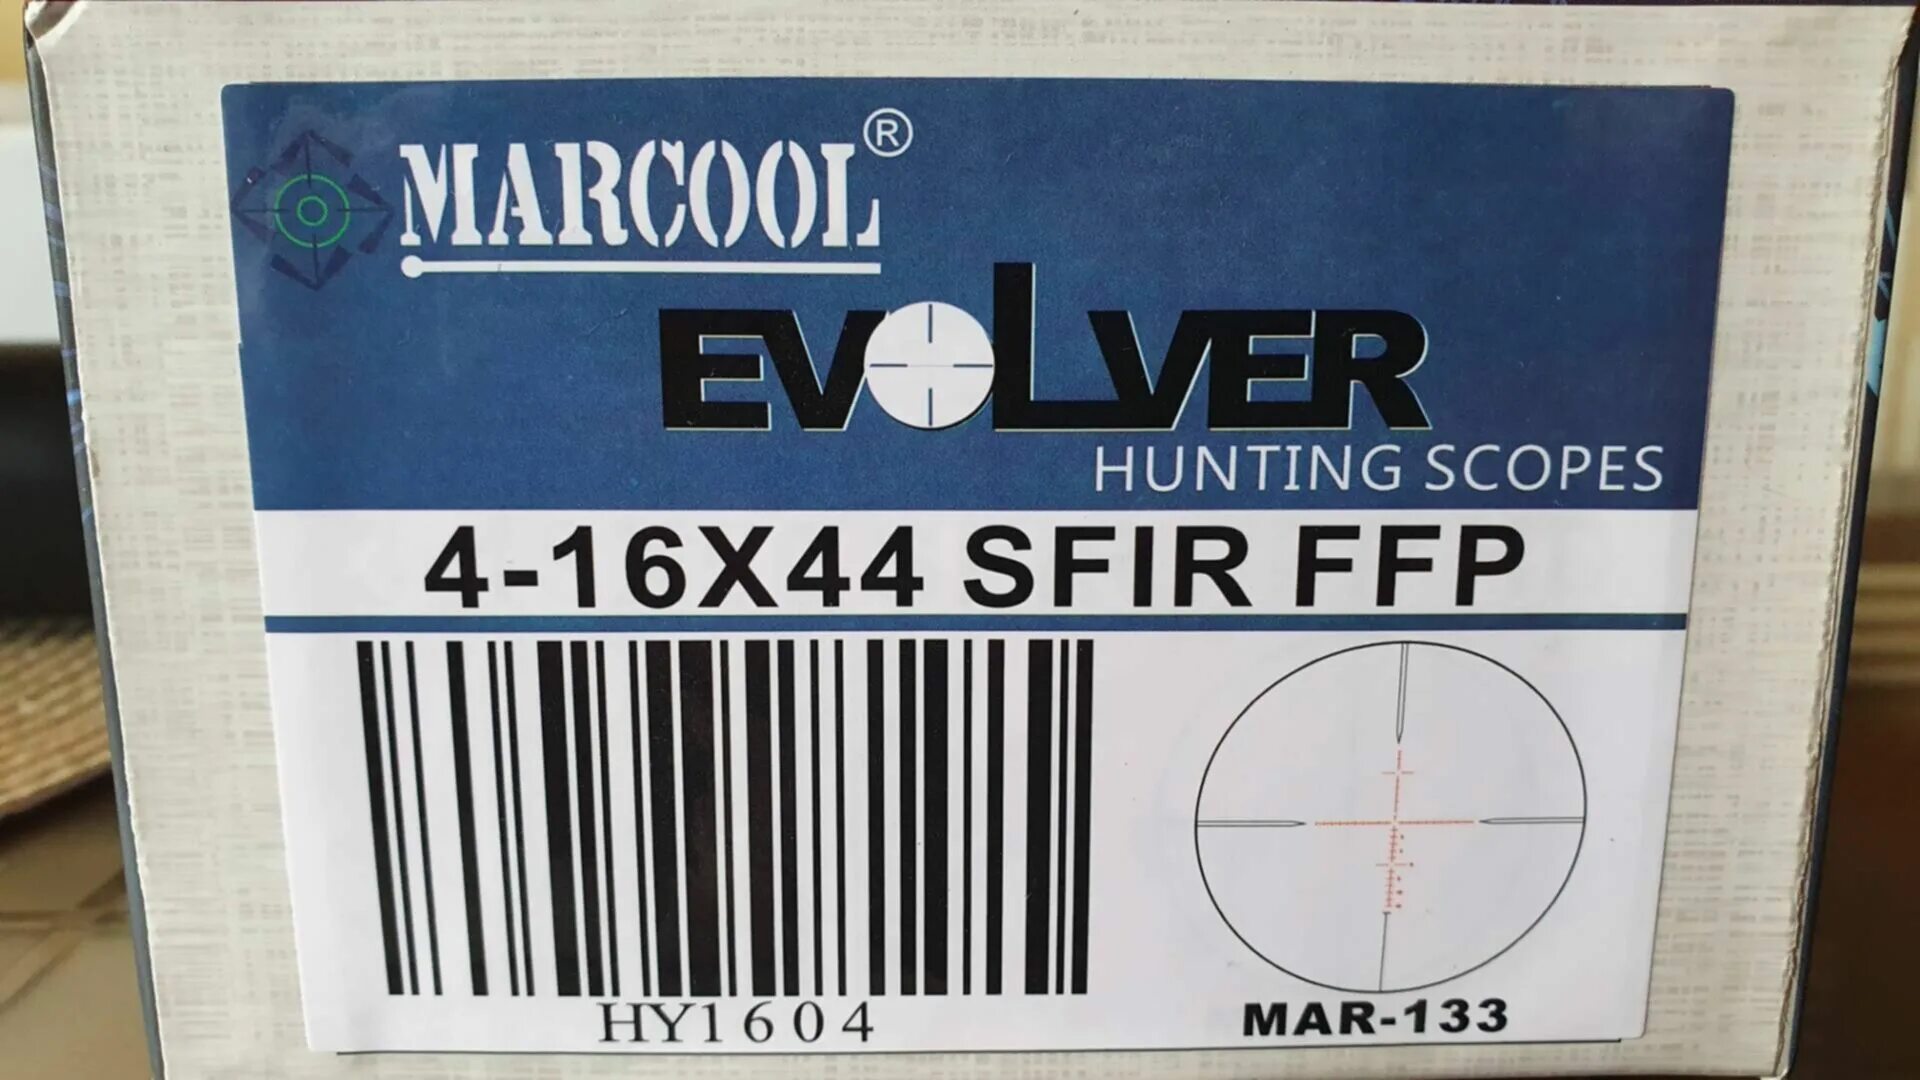 6 16 44. Marcool evv 4-16x44 sfir FFP. Прицел marcool 4-16x44 FFP. Marcool Evolver 4-16x44 sfir FFP hy1612. Marcool evv 4-16x44 sfir FFP Riflescope Mar-133.